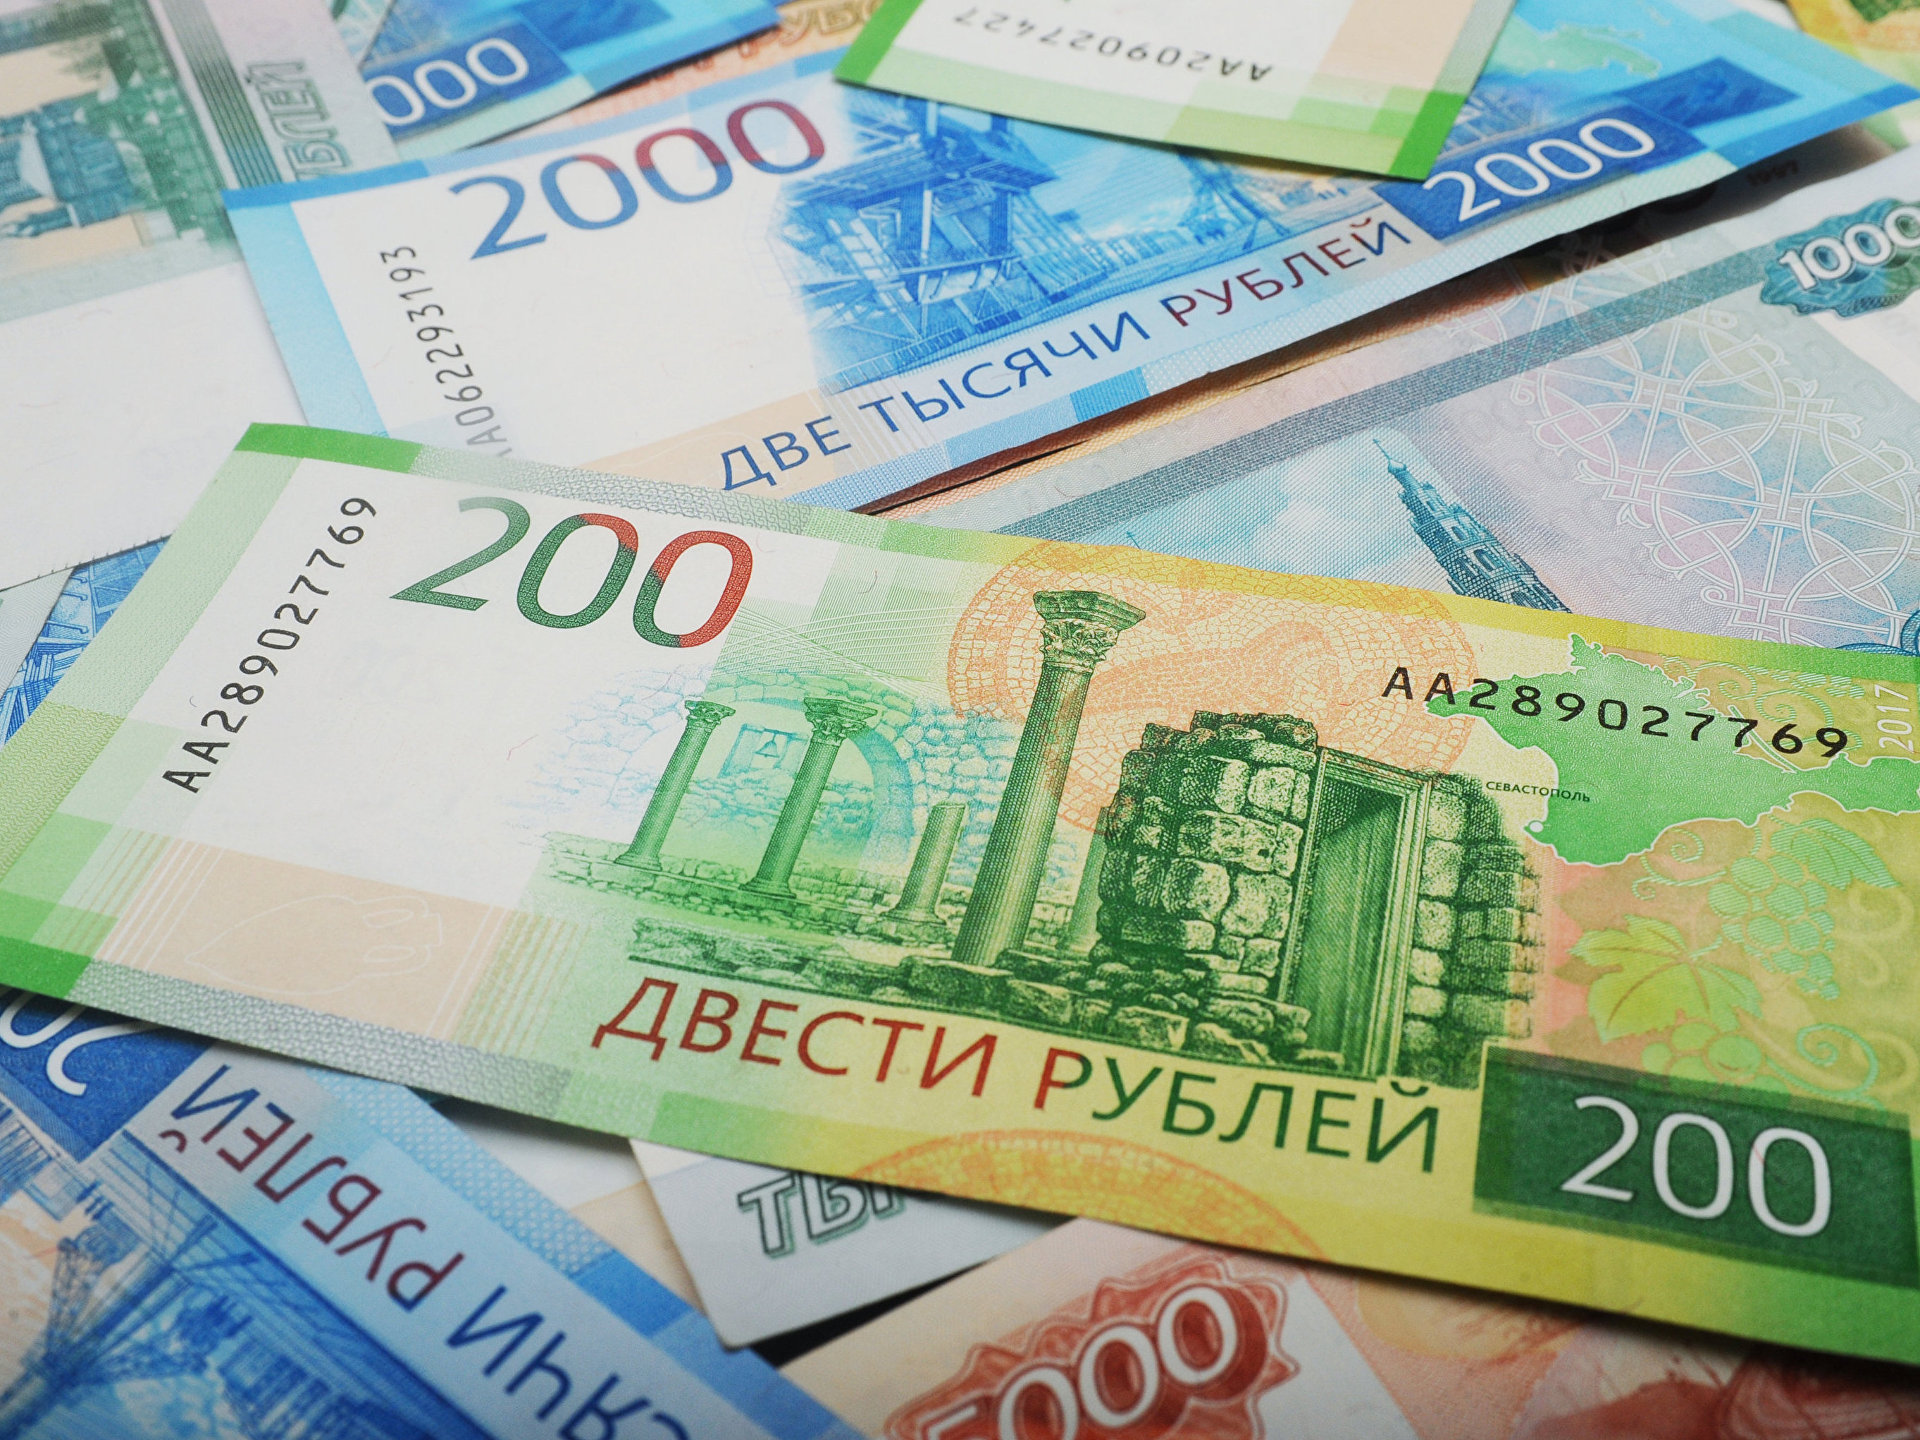 200 00 в рублях. Купюра 200 рублей. 200 000 Рублей. 200 Рублей банкнота. 200 000 Рублей купюра.